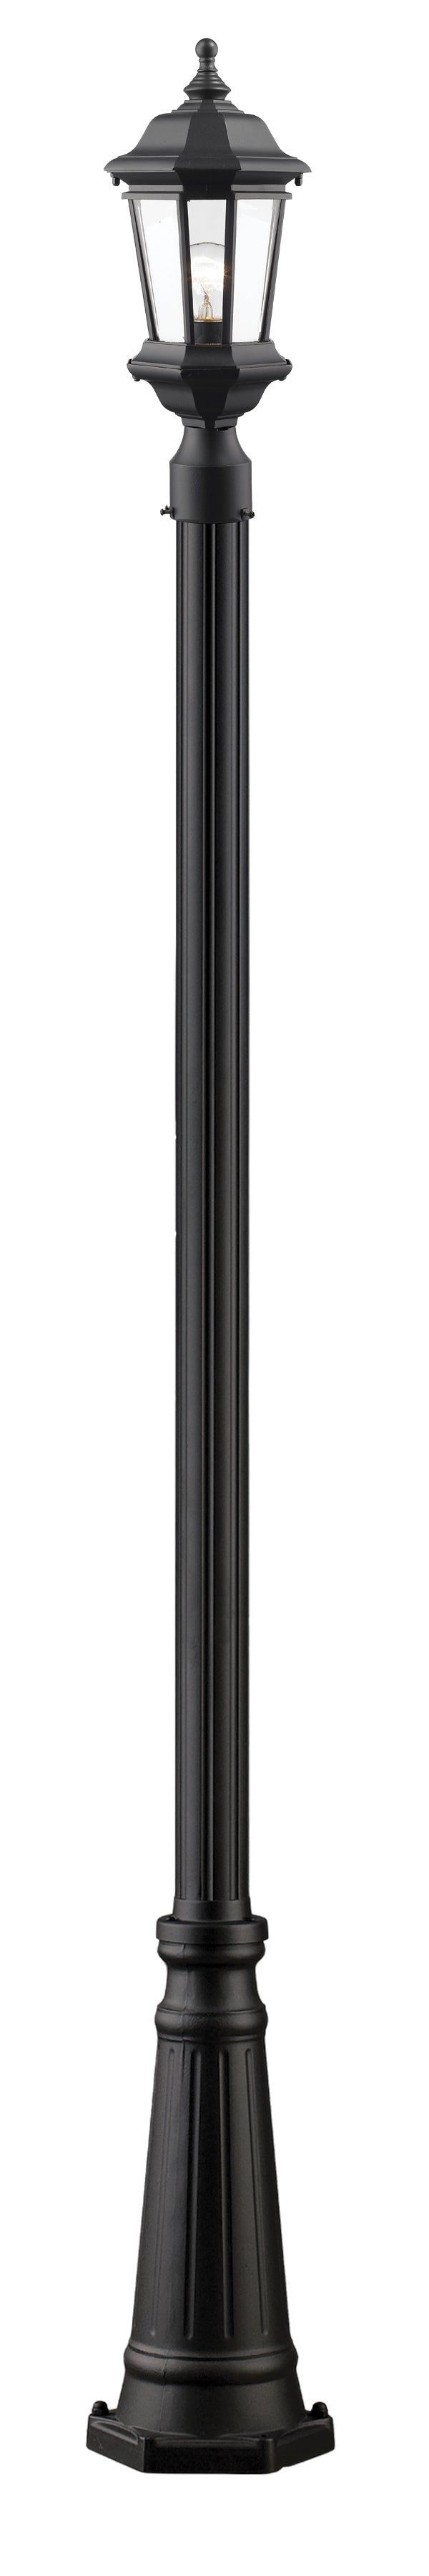 MELBOURNE Luminaire sur poteau Noir - 540PHM-519P-BK | Z-LITE